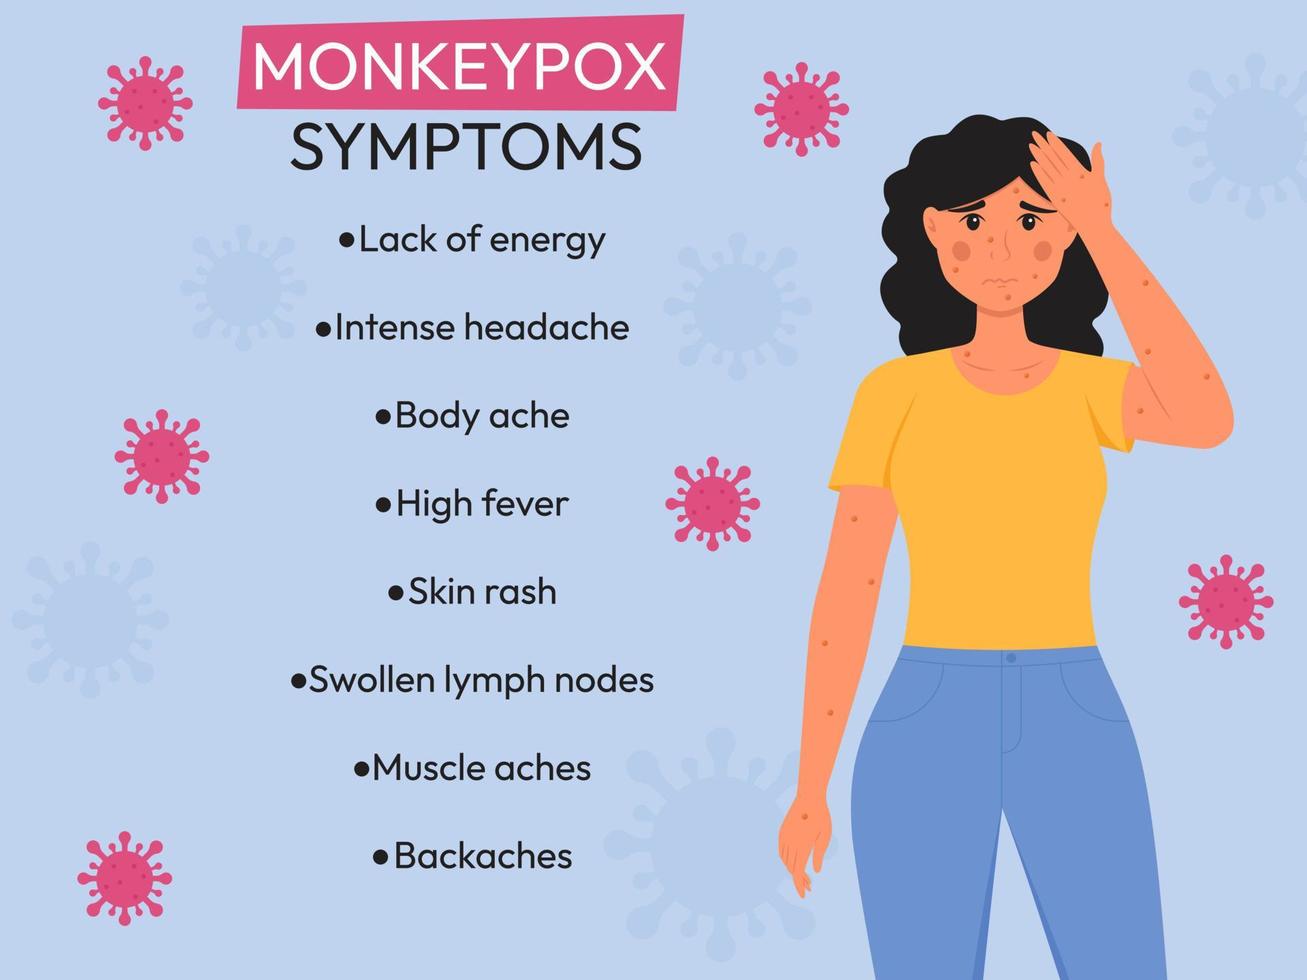 épidémie de monkeypox. infographie des symptômes du virus monkeypox. illustration vectorielle plane pour informer les gens sur une maladie infectieuse. vecteur